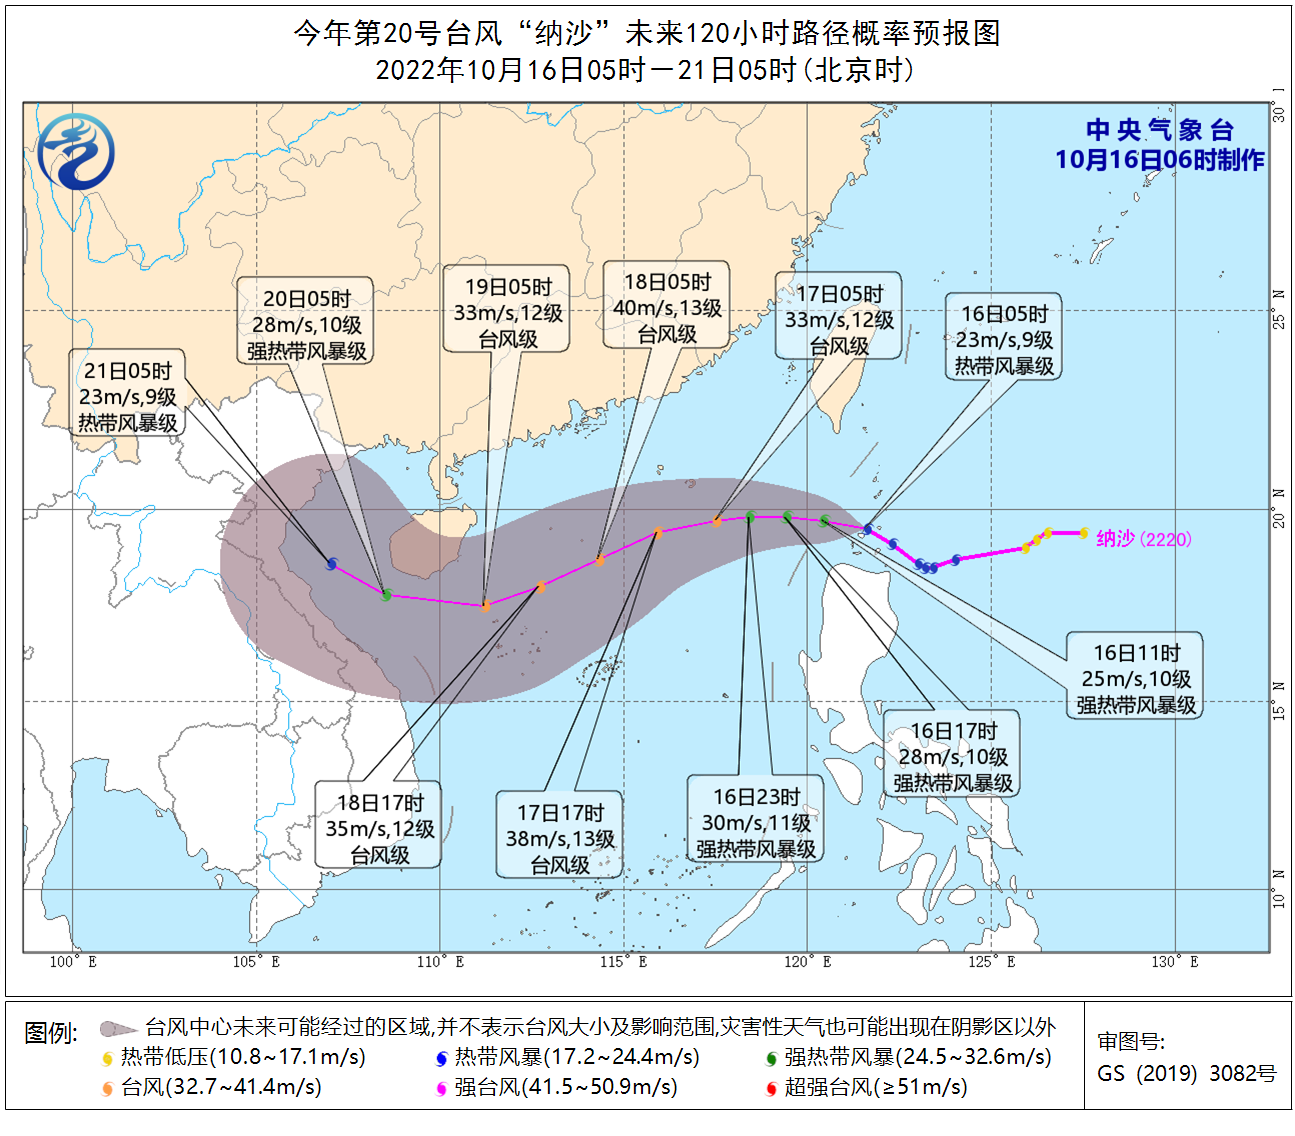 较强冷空气影响中东部地区 台风“纳沙”将影响南海北部